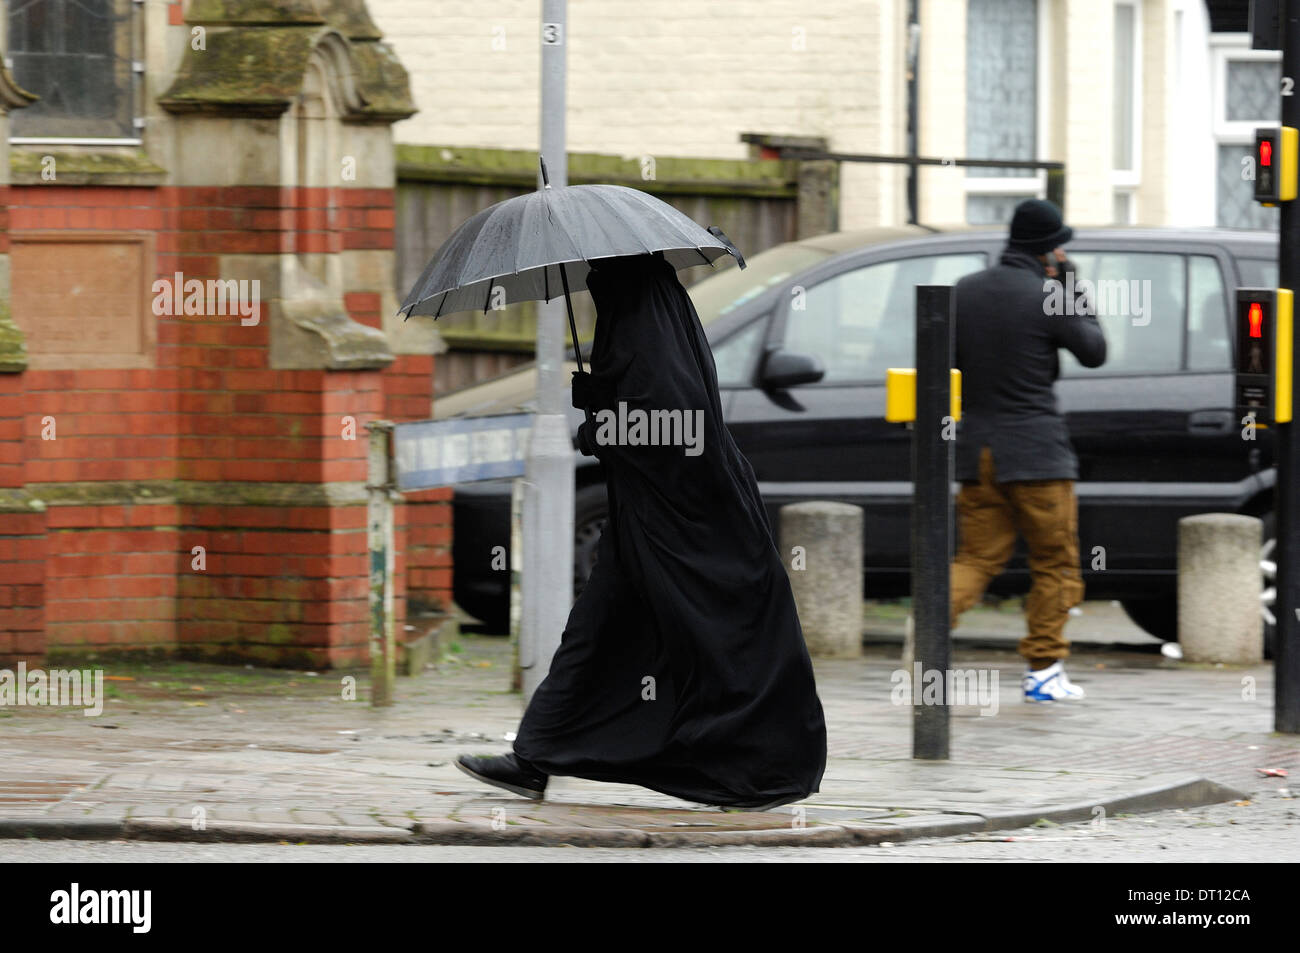 islamische-frau-in-burka-tragen-schirm-im-regen-luton-bedfrodshire-dt12ca.jpg